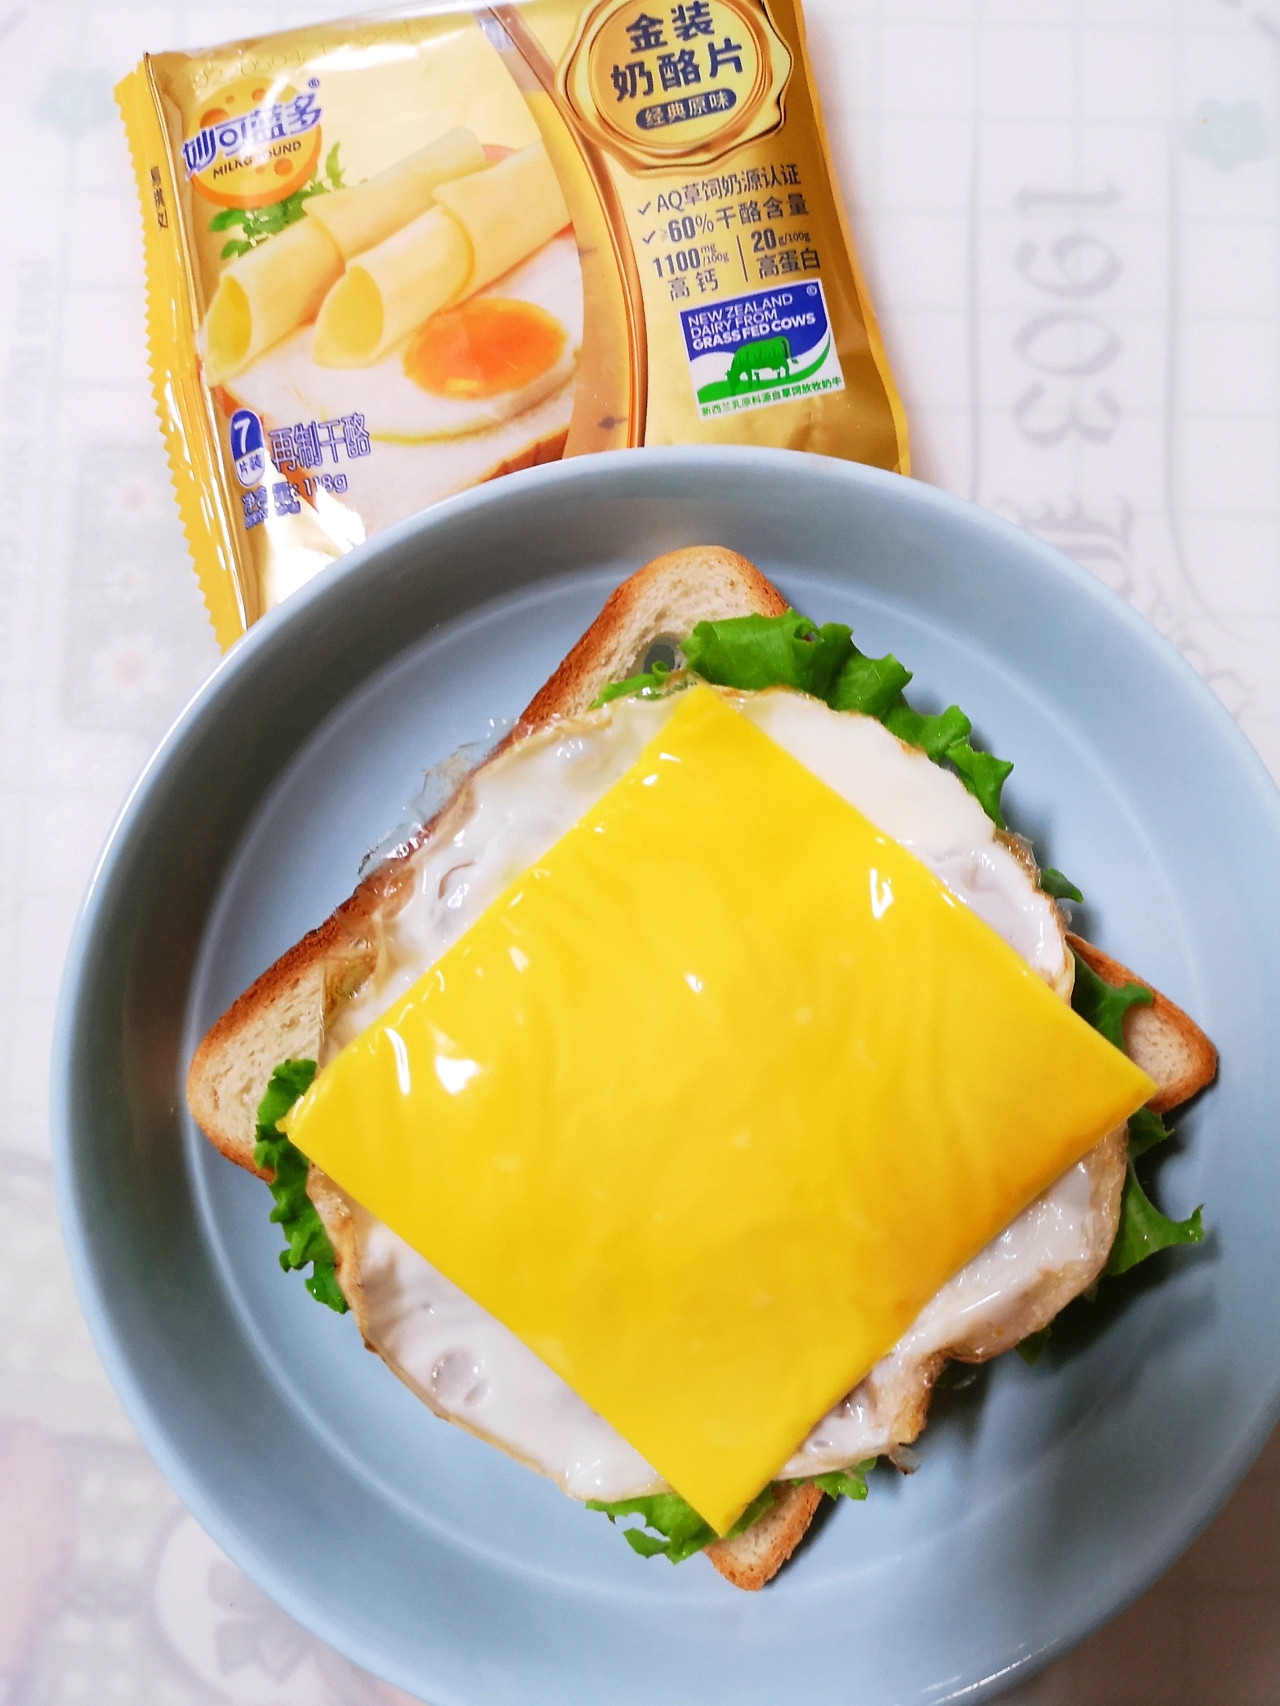 恰巴达奶酪三明治